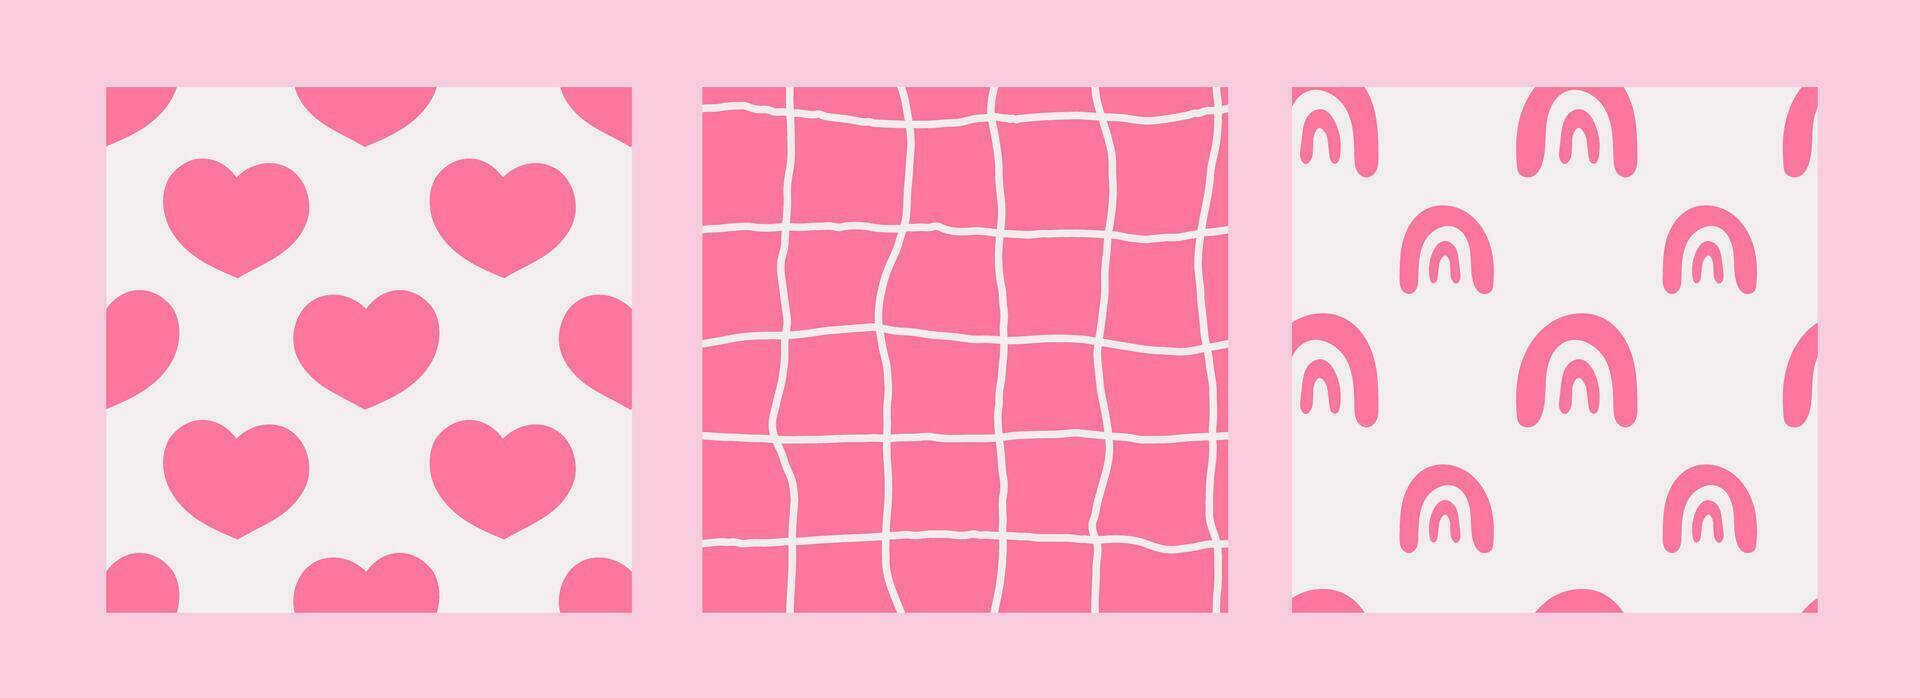 Modern pink seamless patterns set vector